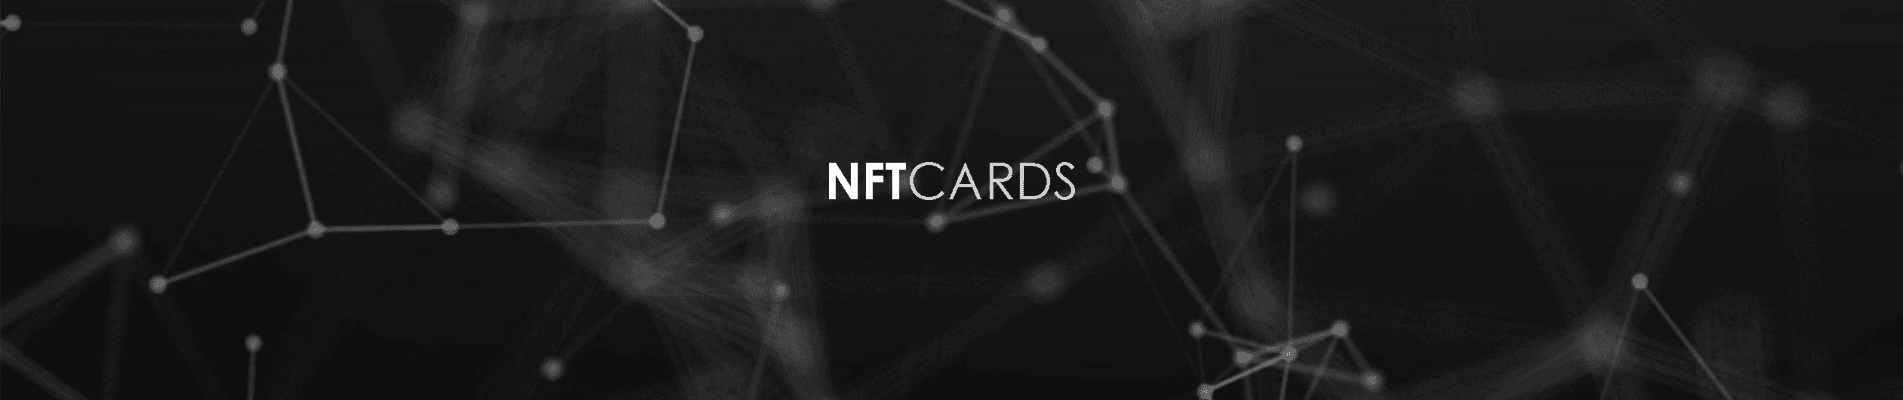 nft-cards 橫幅